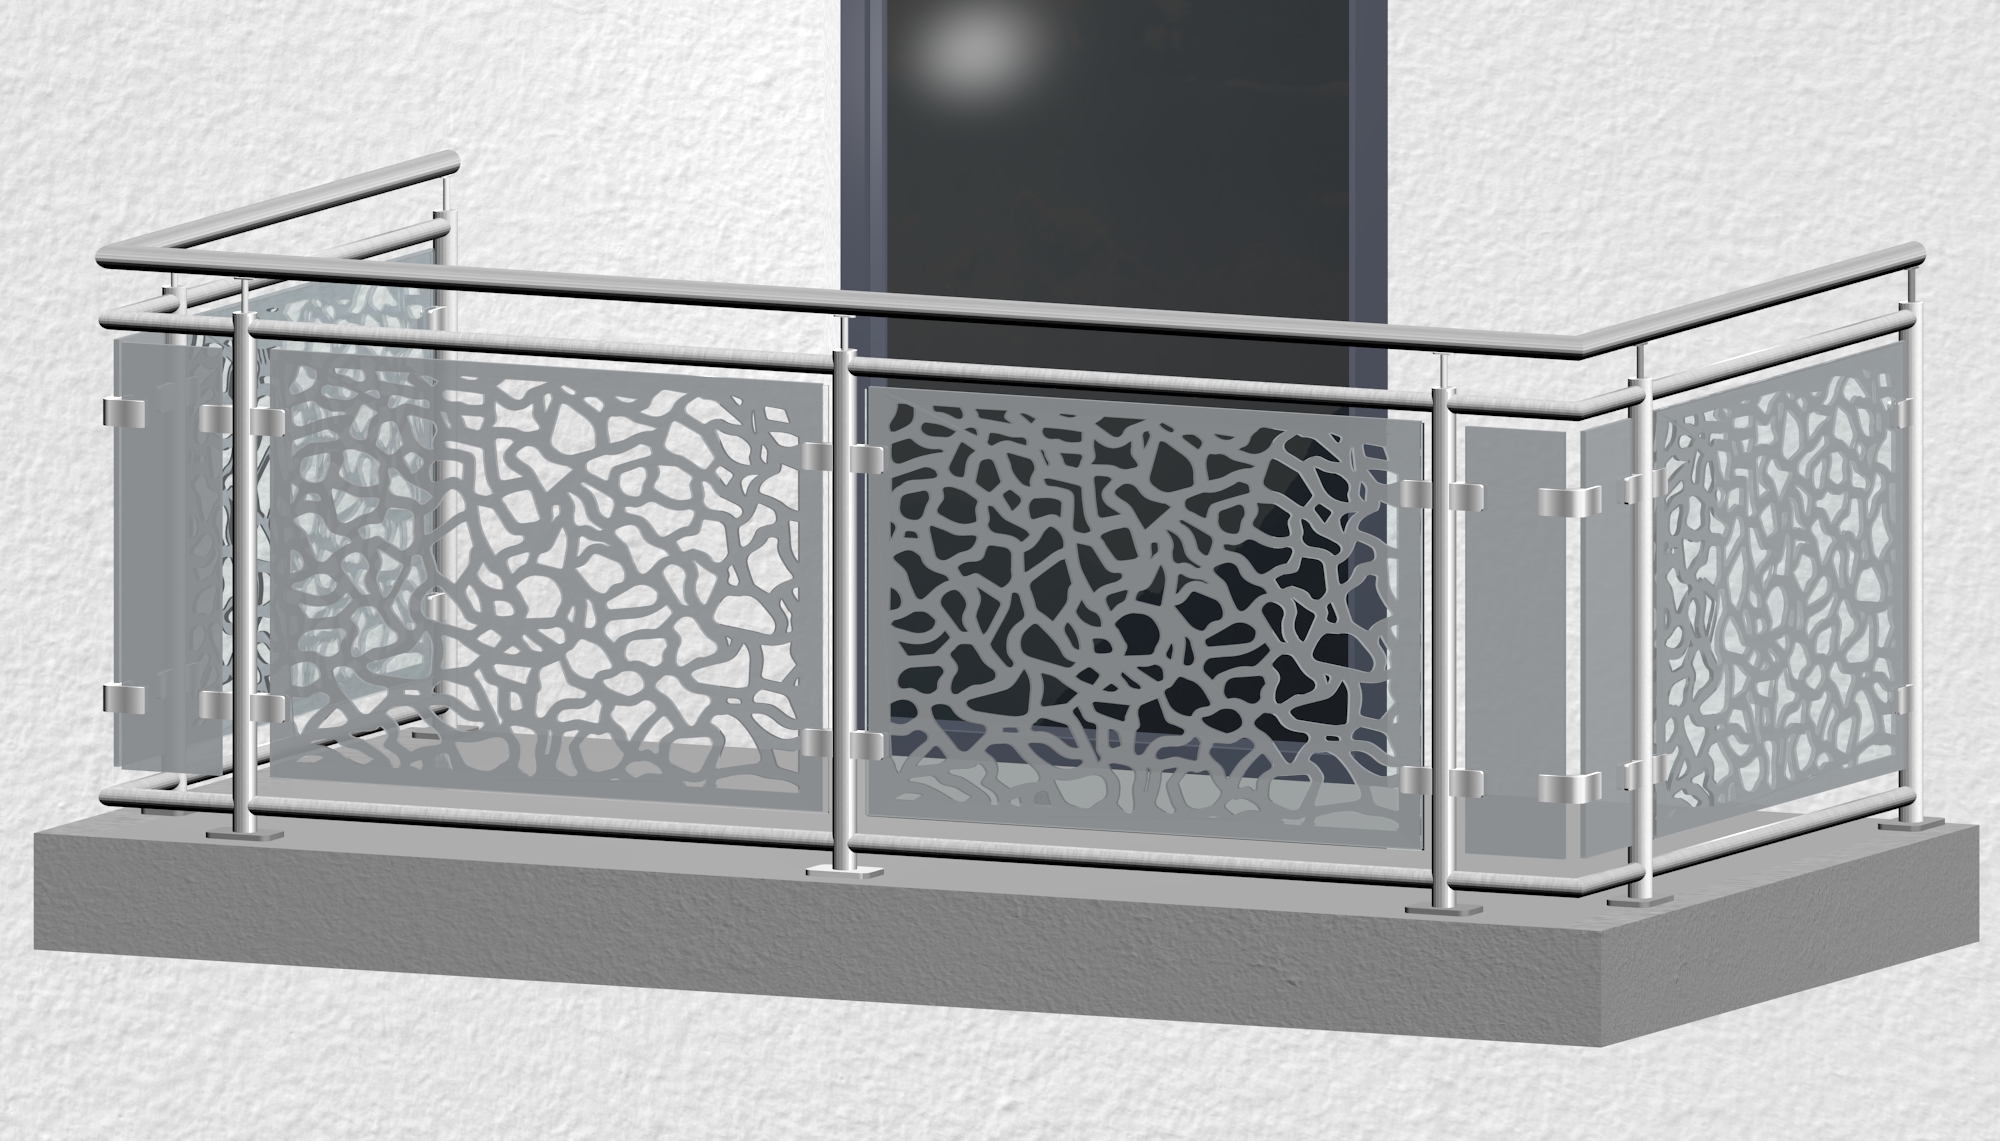 Balkonhek roestvrij staal ontwerp glas AB 2